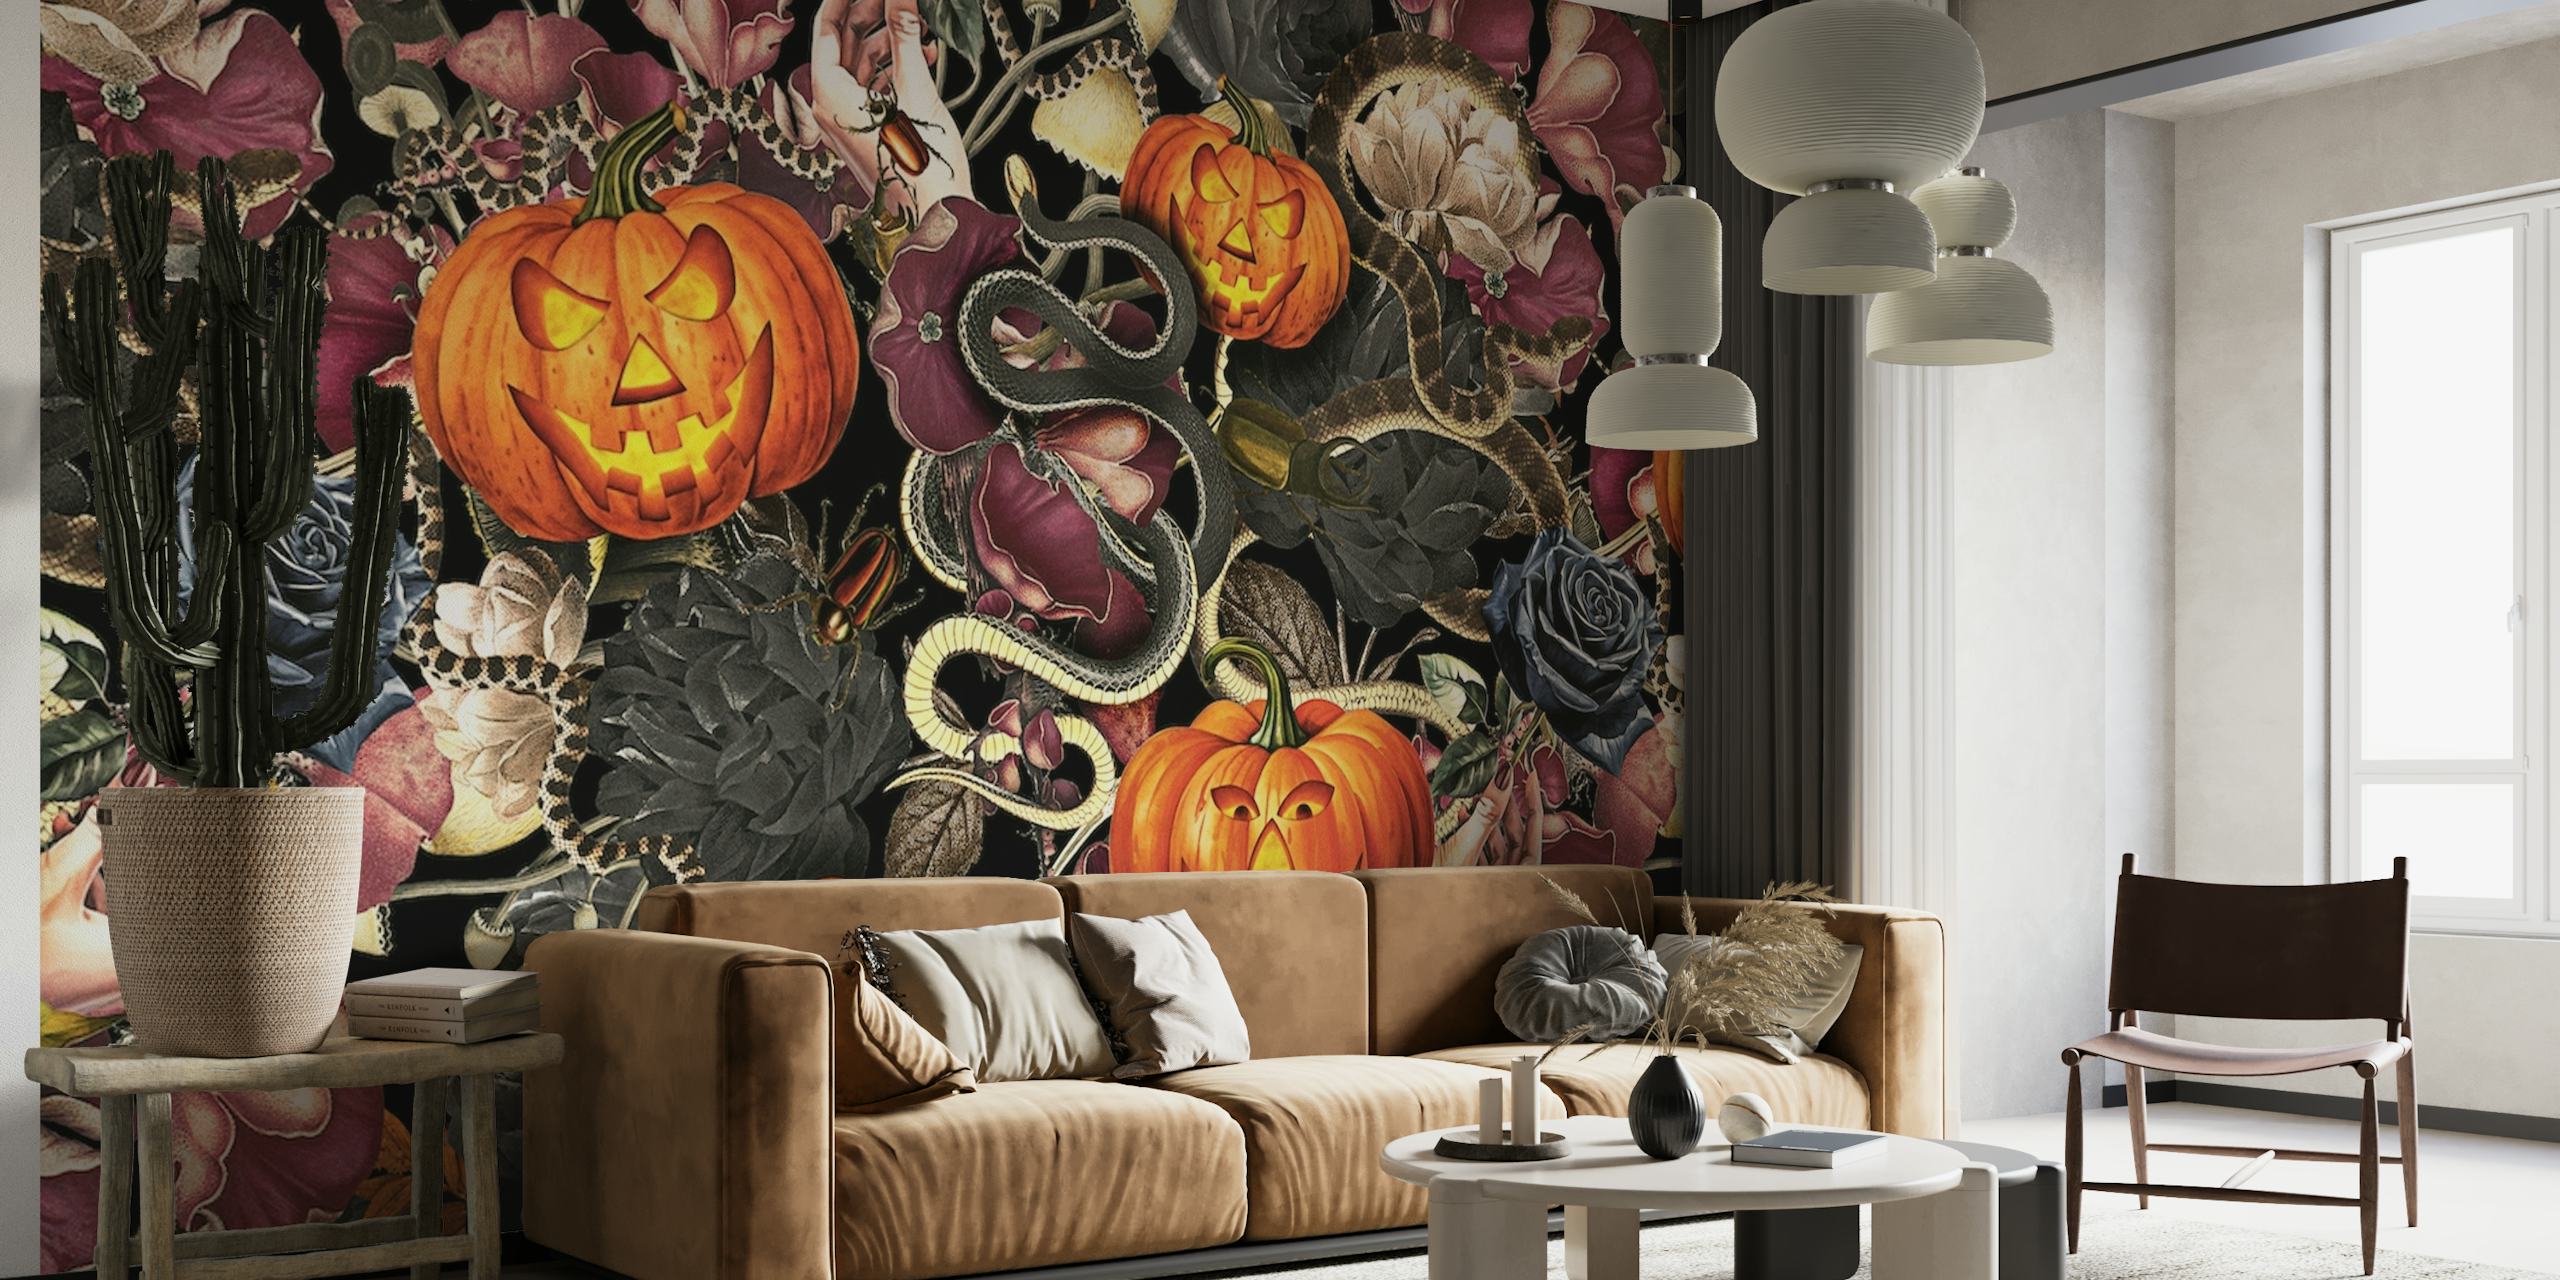 Fototapete im Halloween-Stil mit geschnitzten Kürbissen und Schlangen auf dunklem Blumenhintergrund